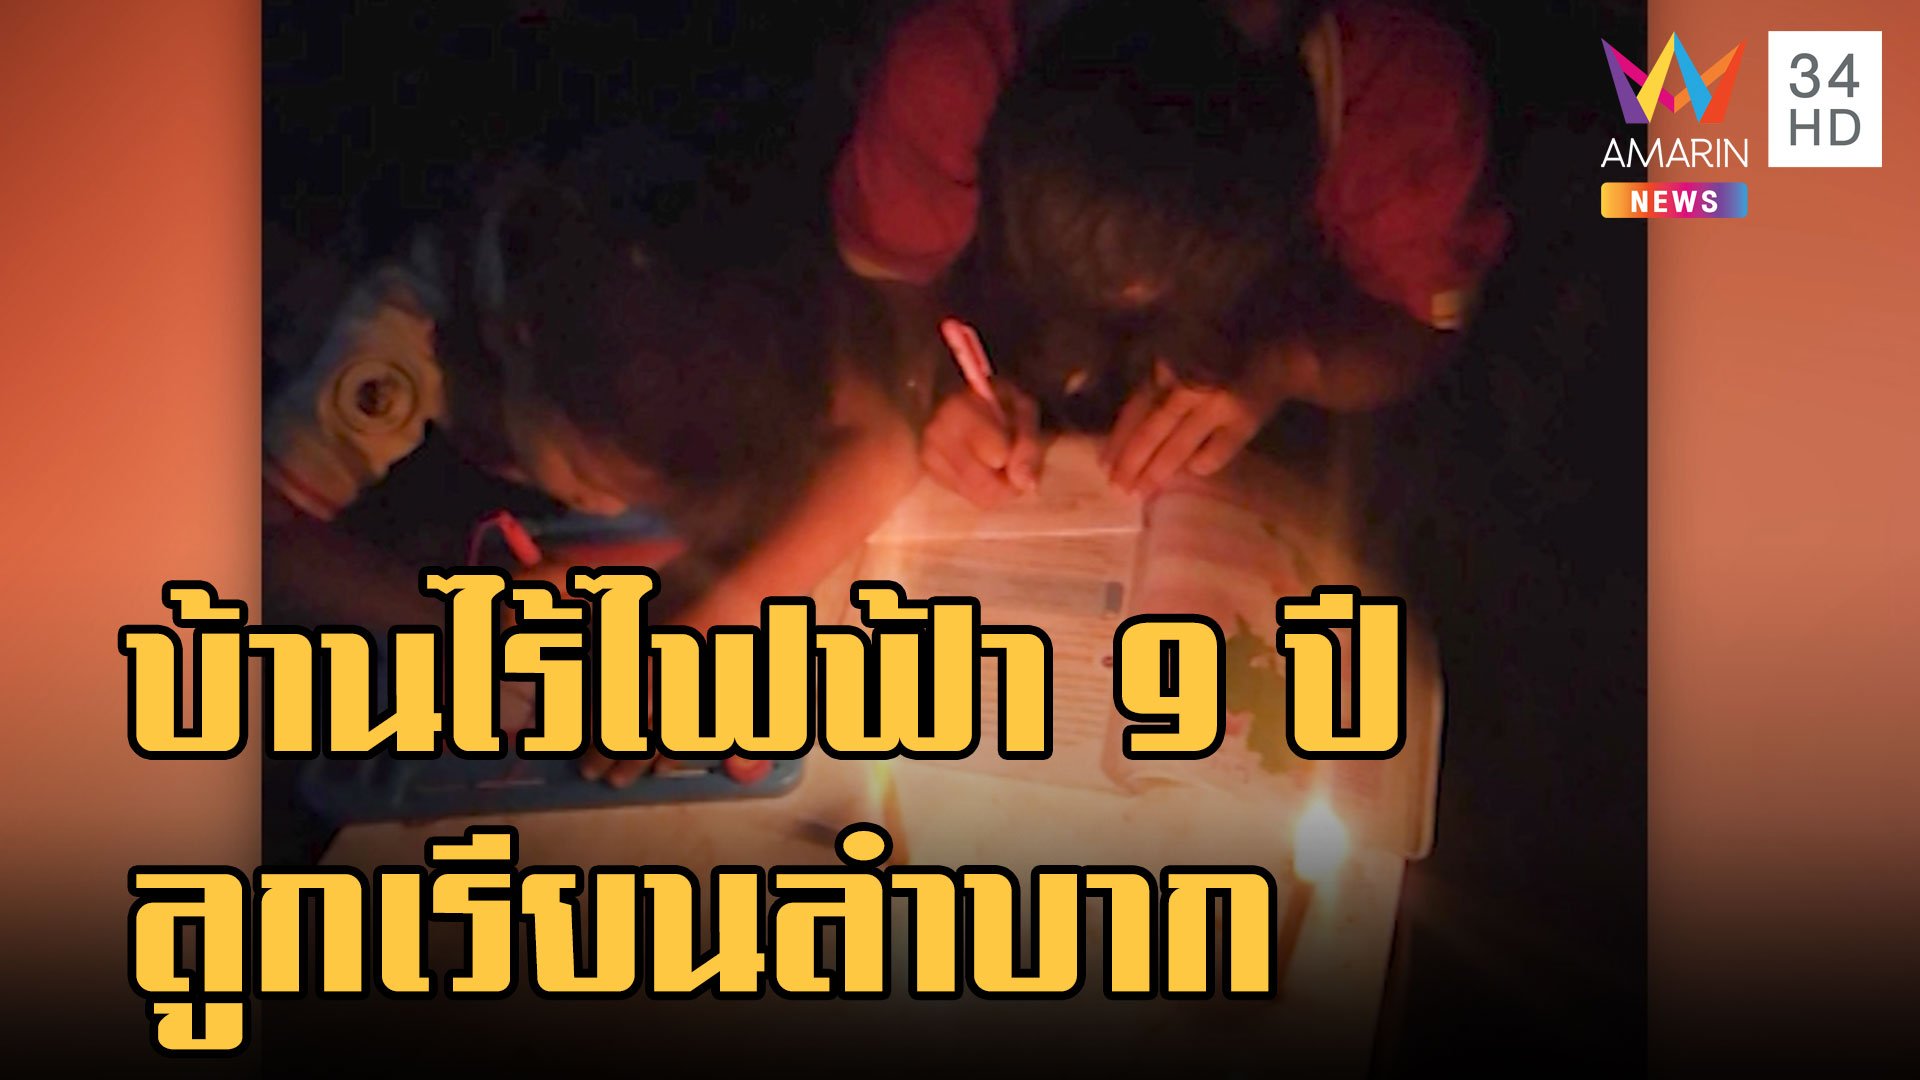 หนุ่มร้องสื่อ บ้านไม่มีไฟฟ้าใช้นาน 9 ปี ลูกทำการบ้านลำบาก | ข่าวเที่ยงอมรินทร์ | 17 ม.ค. 66 | AMARIN TVHD34